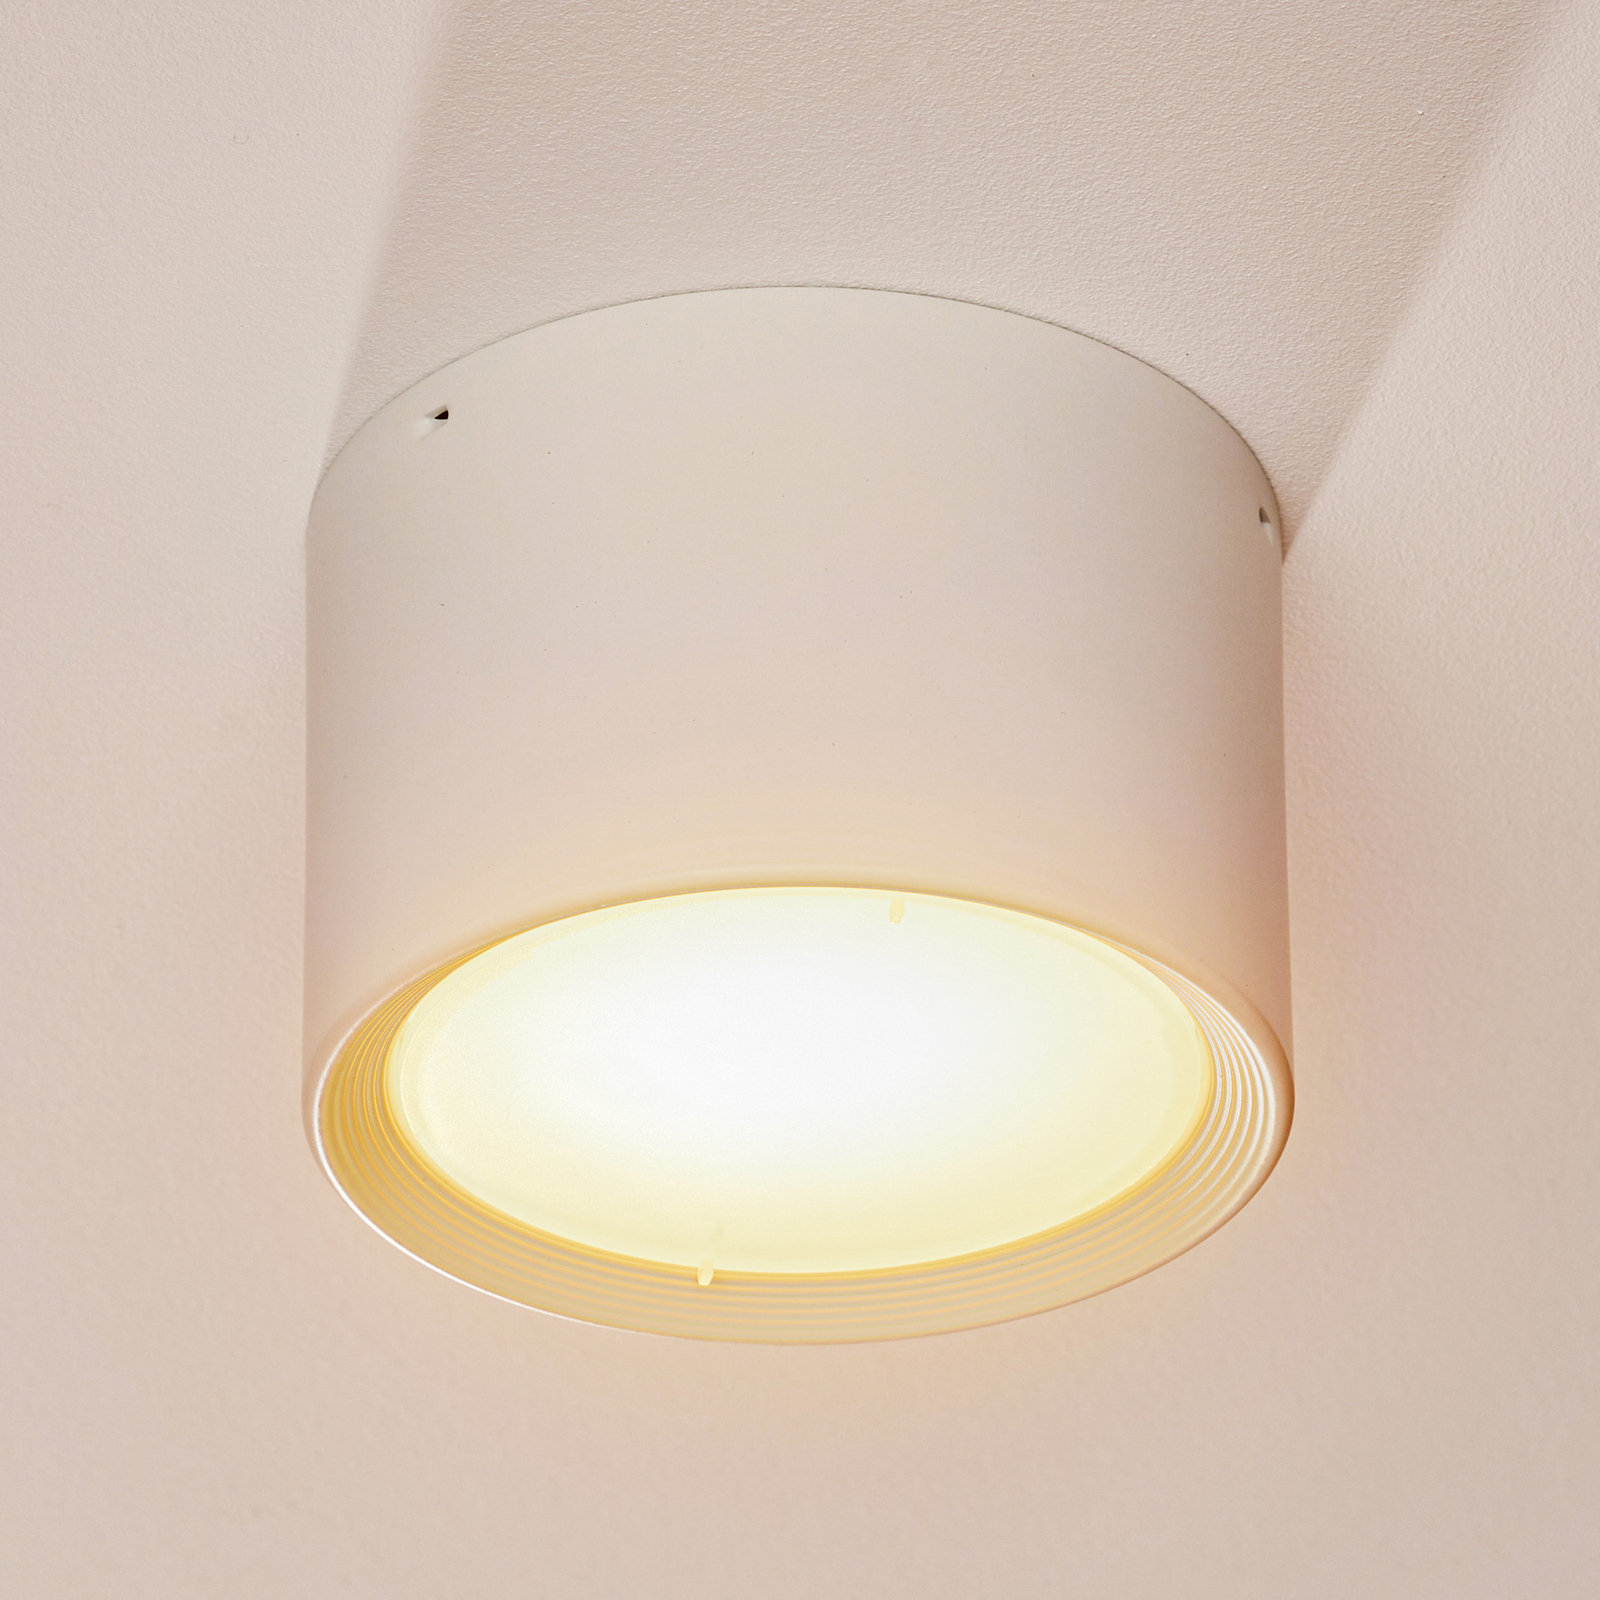 LED-downlight Ita i hvitt med spreder, Ø 12 cm